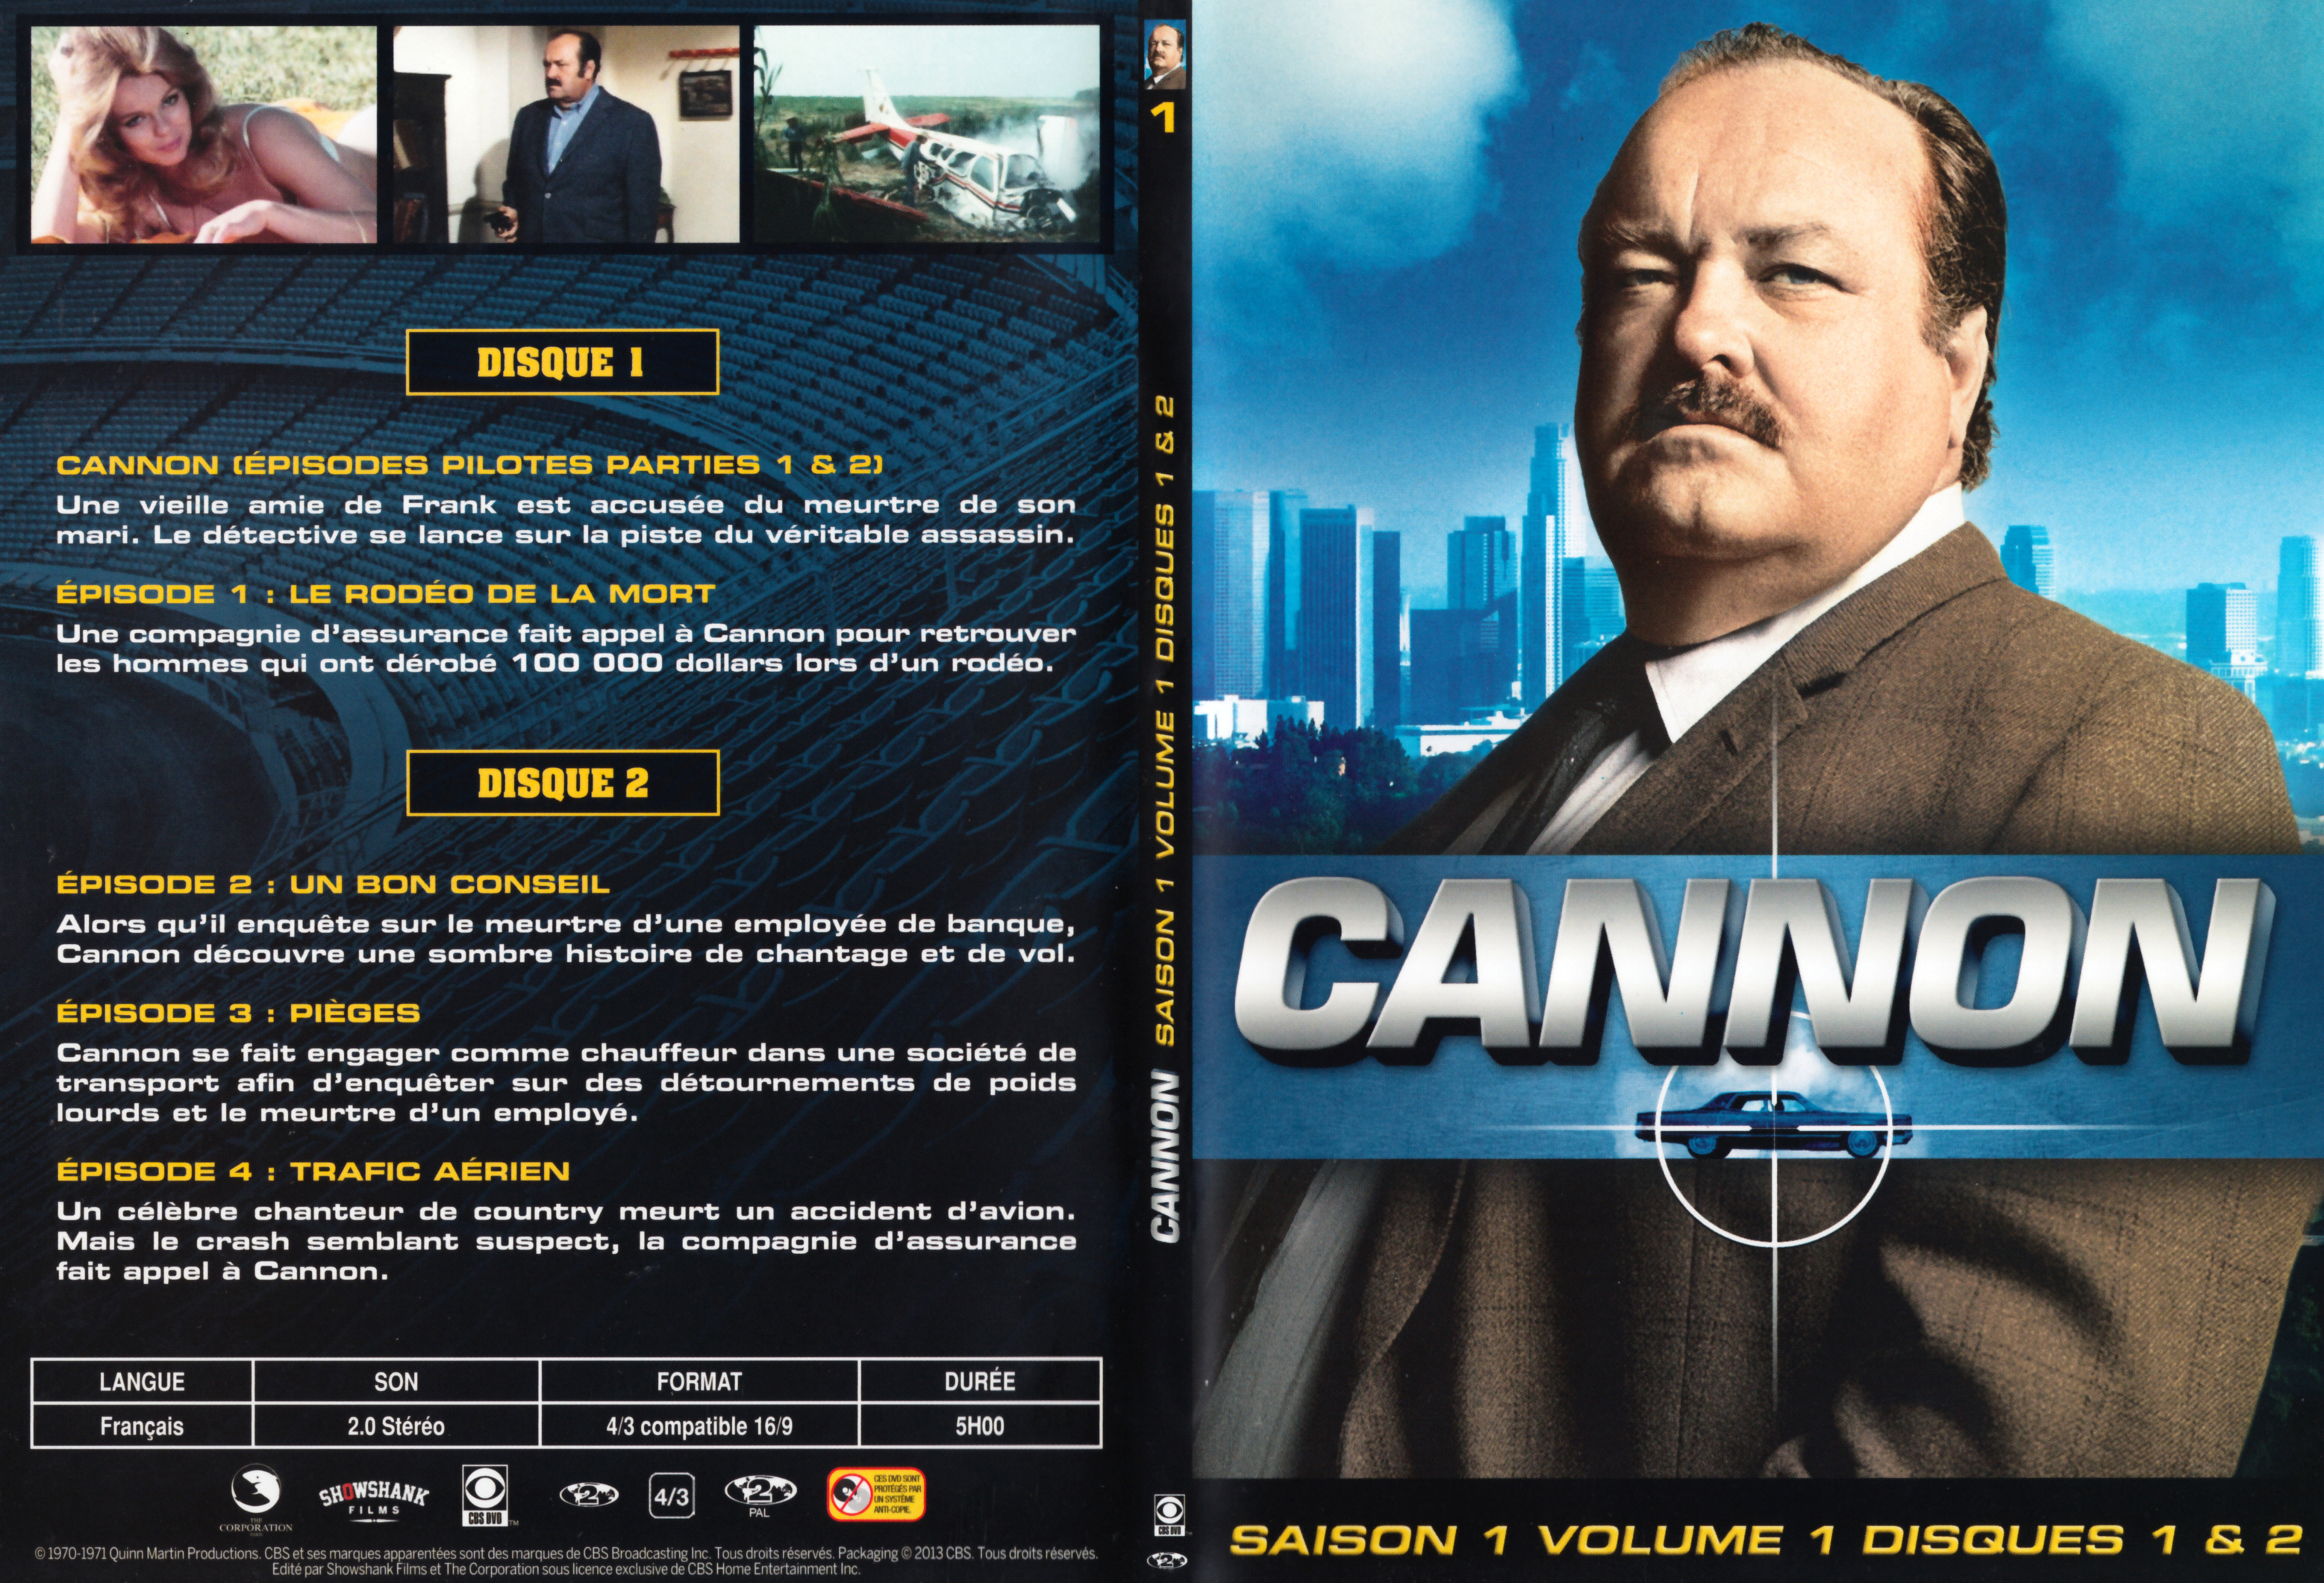 Jaquette DVD Cannon Saison 1 Vol 1 DVD 1